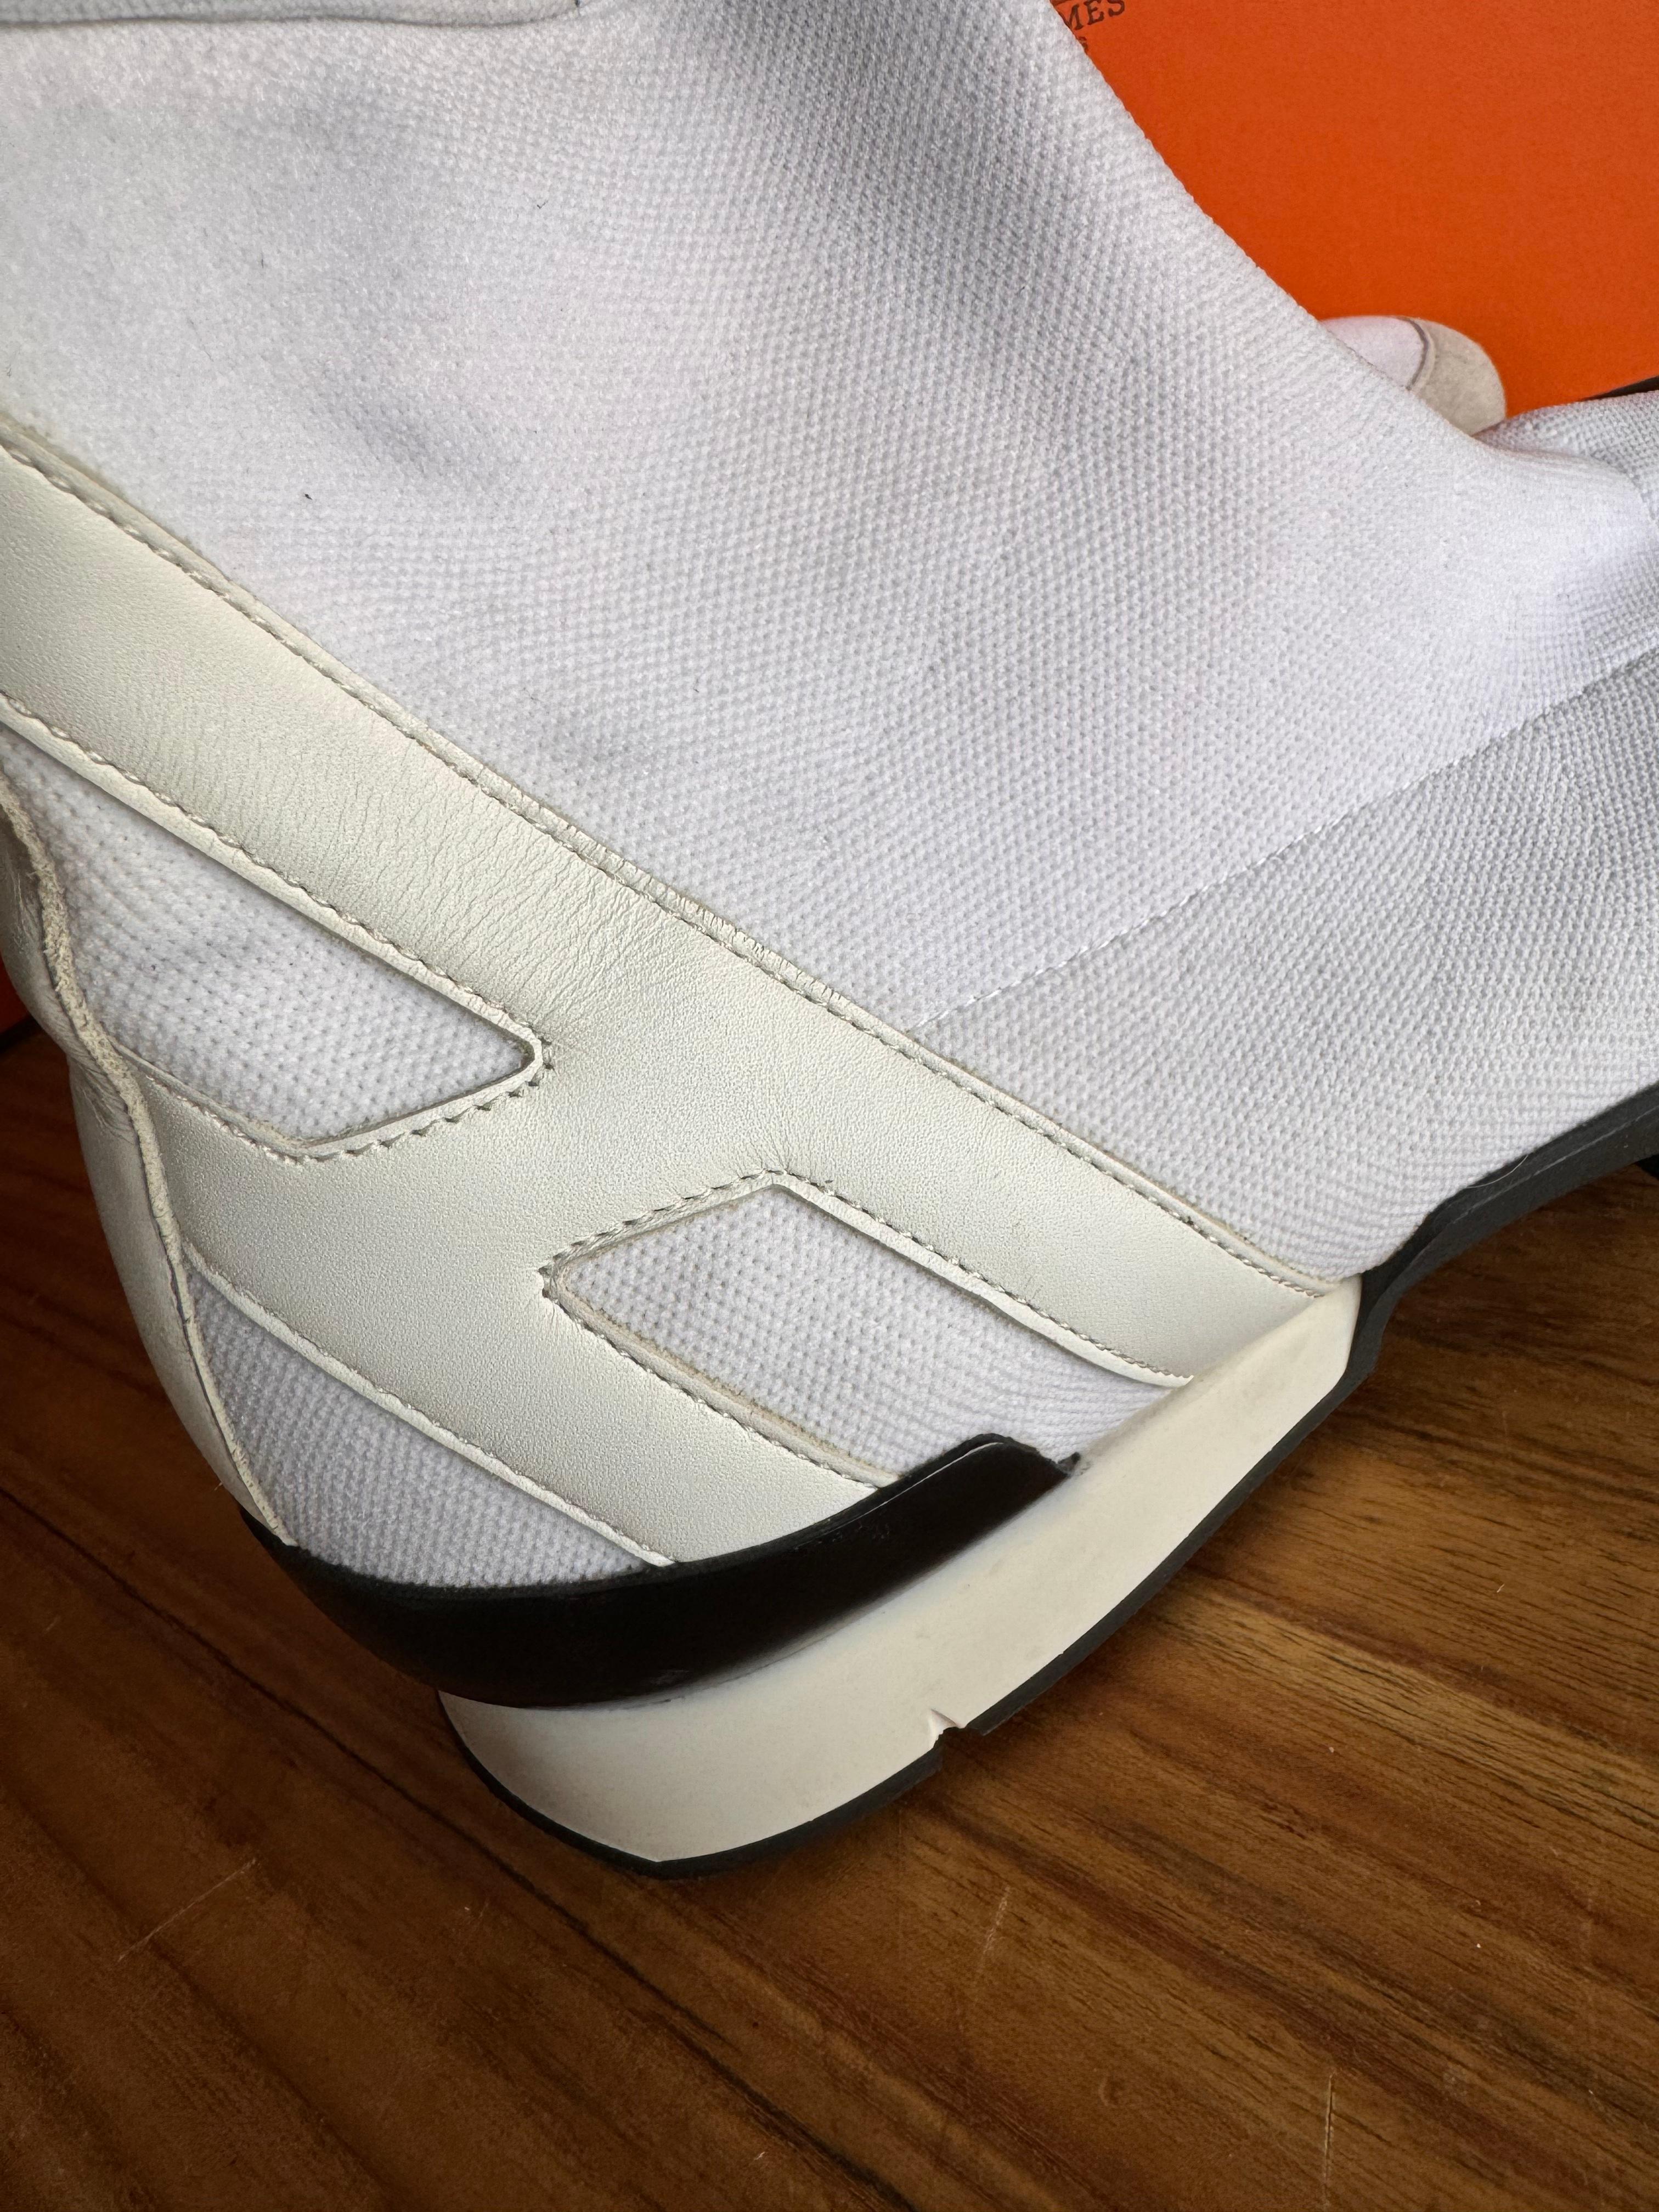 Voici la sneaker Socks d'Hermès, un chef-d'œuvre du design contemporain de la chaussure. Créées par la célèbre marque de luxe Hermès, ces baskets redéfinissent les limites de l'élégance décontractée. D'un blanc immaculé, elles dégagent un sentiment